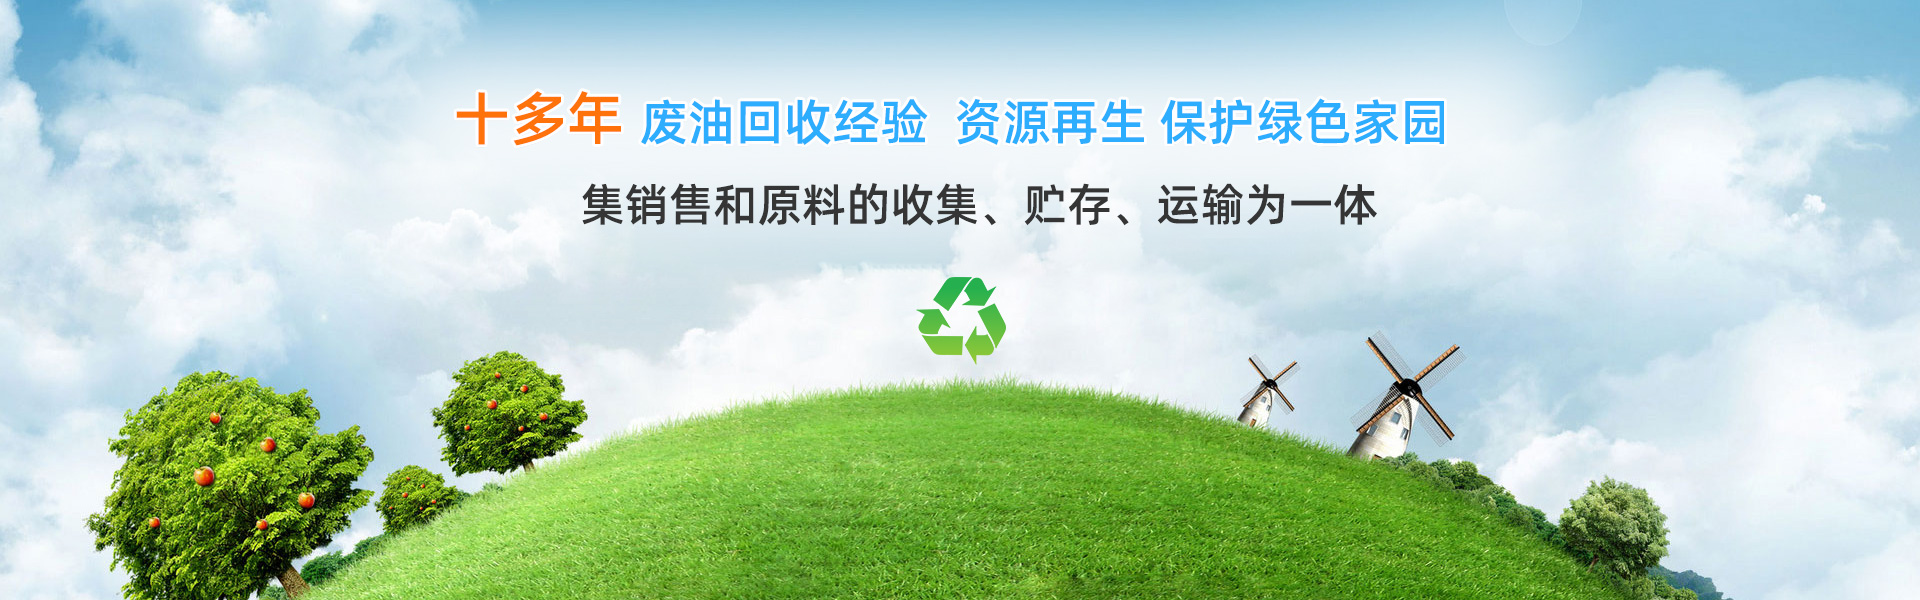 首页轮播图_深圳市千里马废油化工回收有限公司